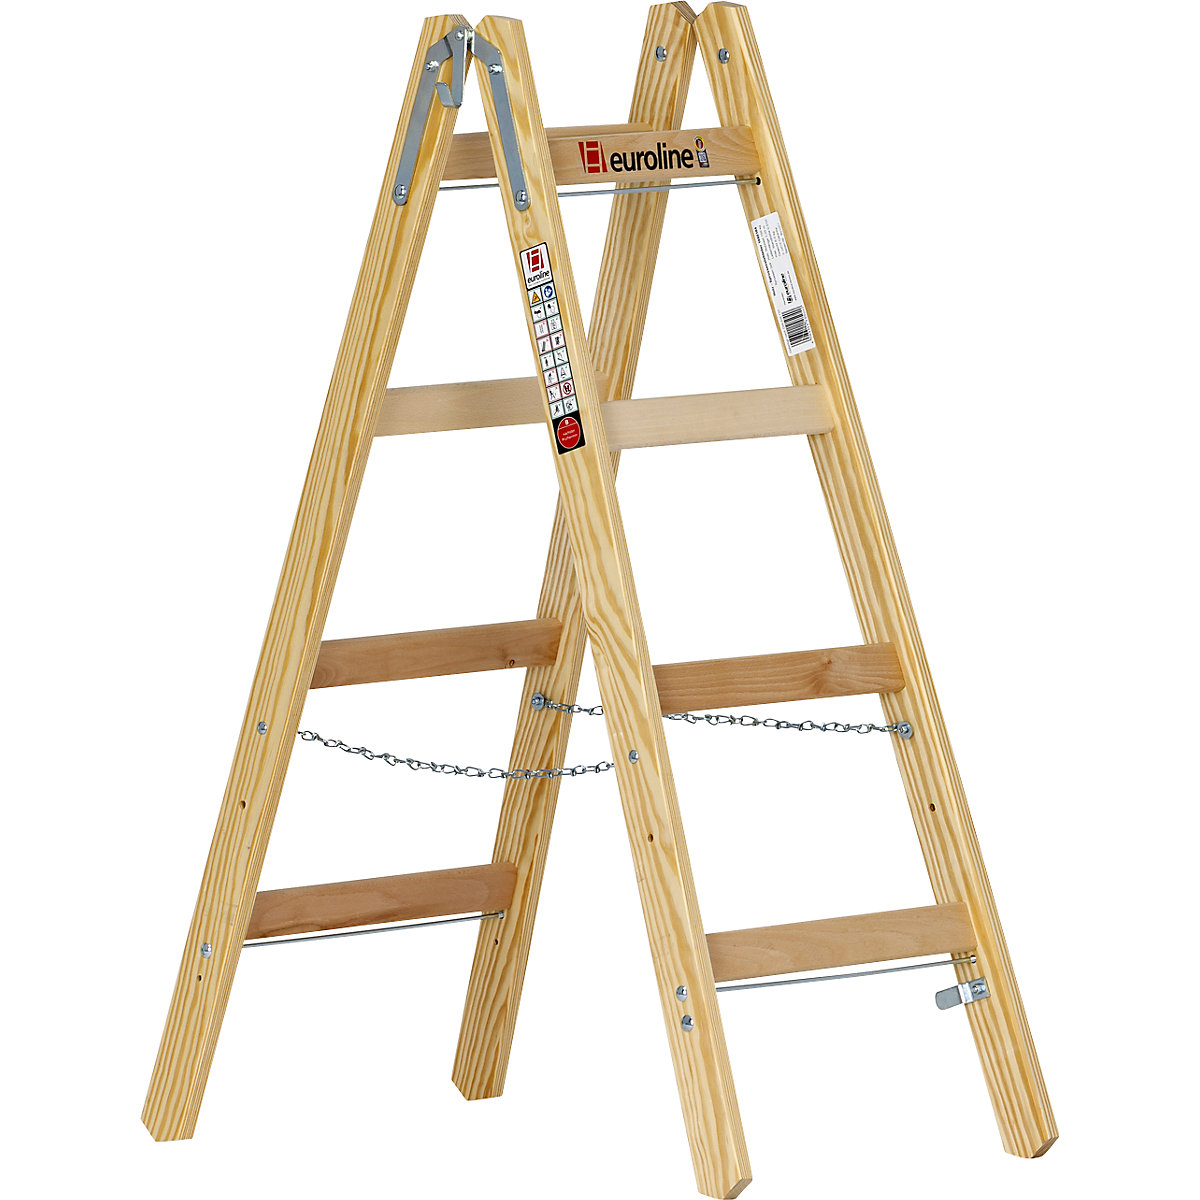 Drevený stojaci rebrík s priečkami - euroline